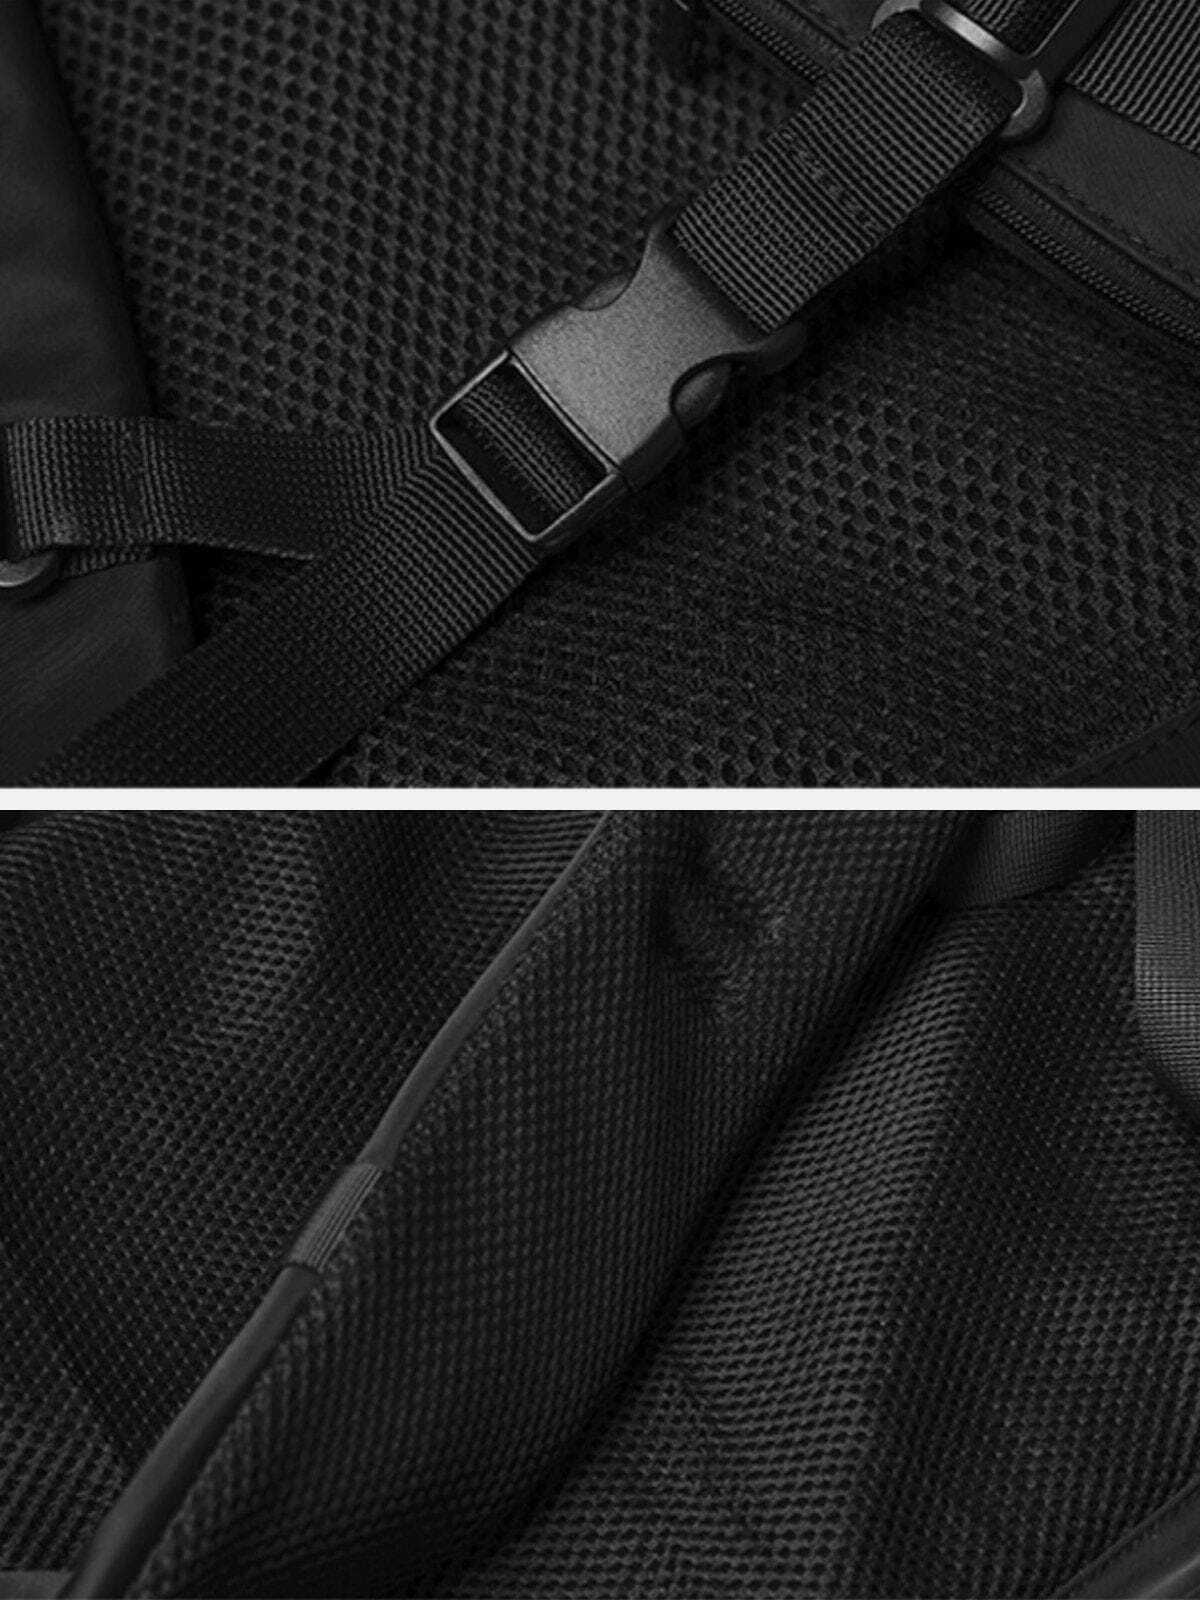 versatile multipocket shoulder bag edgy & functional 2703